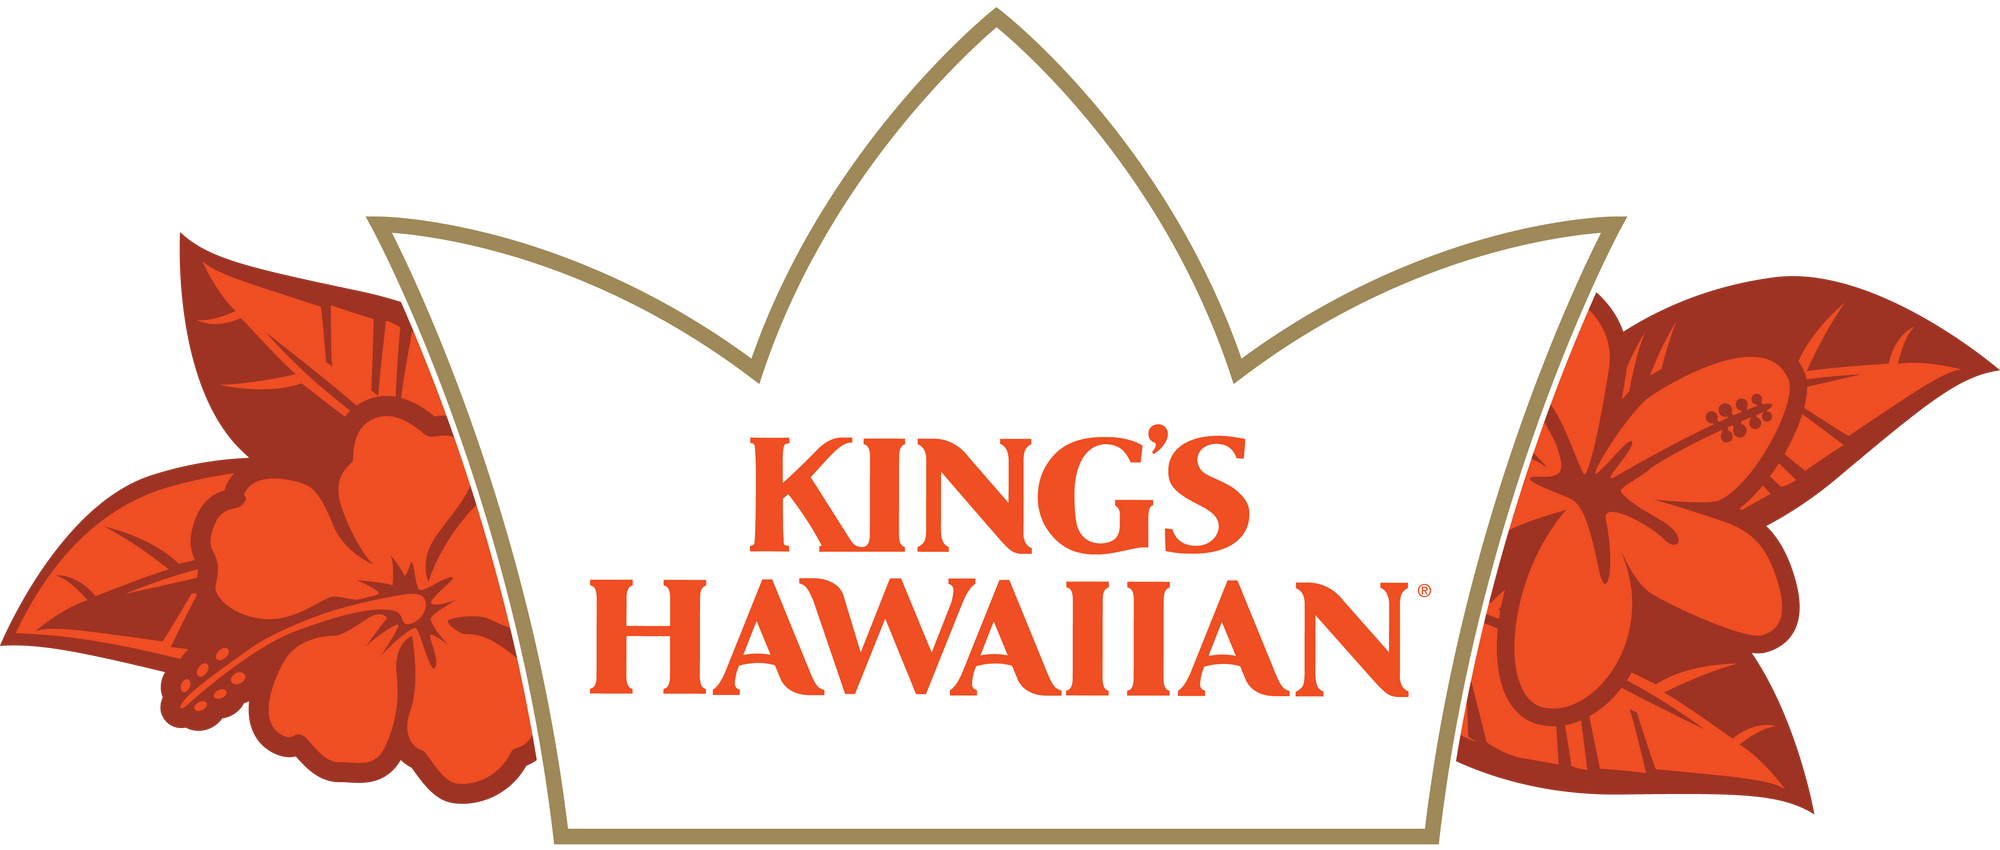 King's Hawaiian Logo 